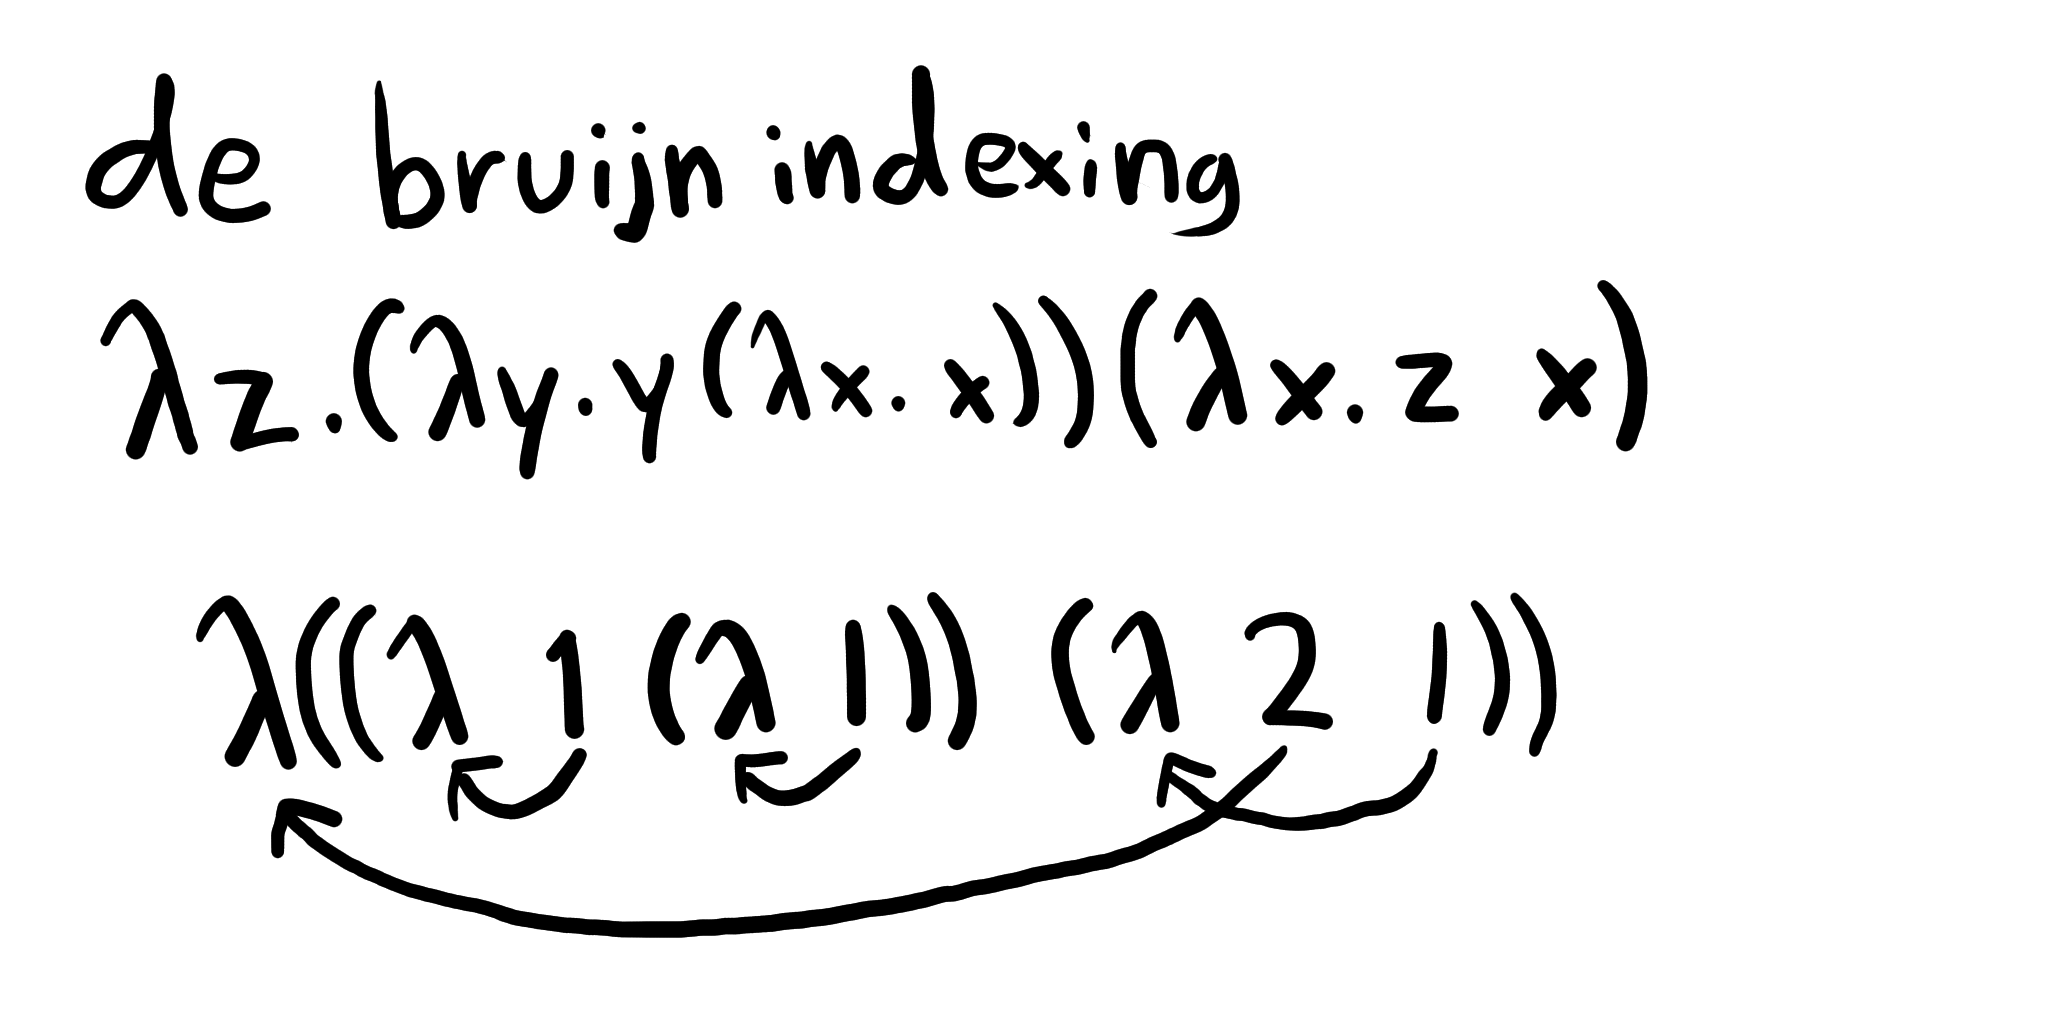 λz. (λy. y (λx. x)) (λx. z x) = λ ((λ 1 (λ 1)) (λ 2 1))